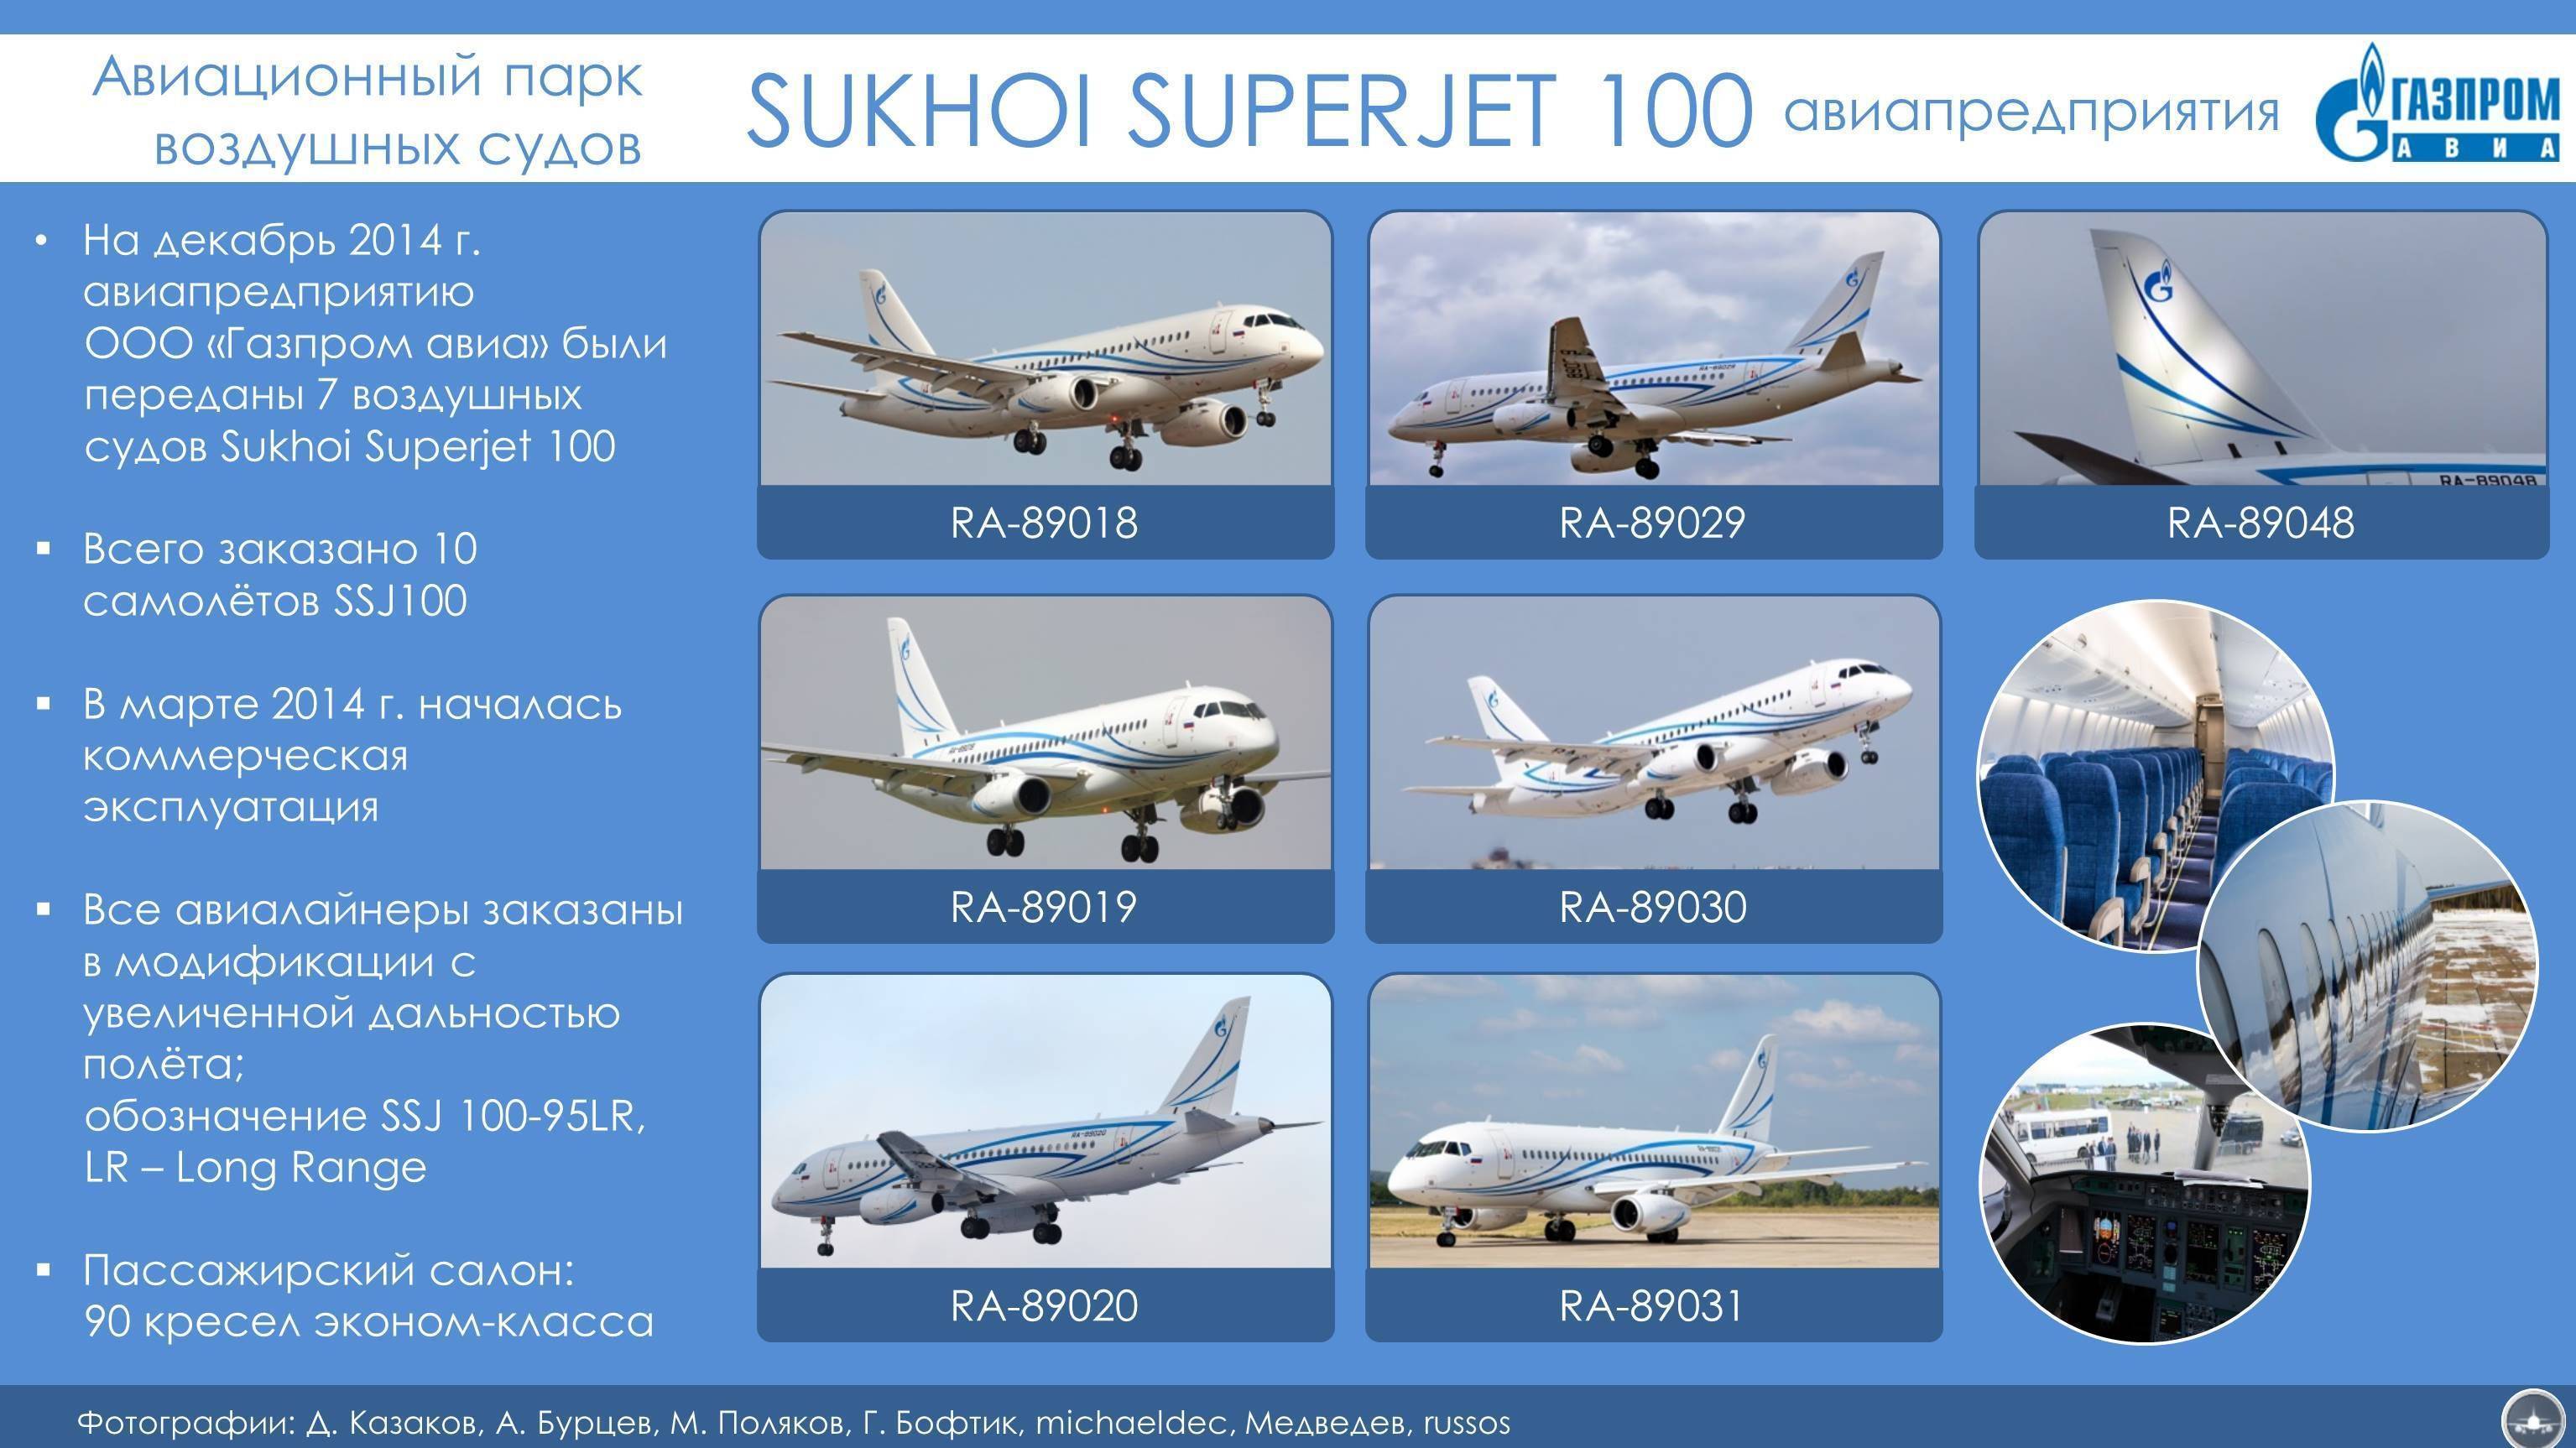 Sukhoi superjet 100: от взлета до падения - впк.name